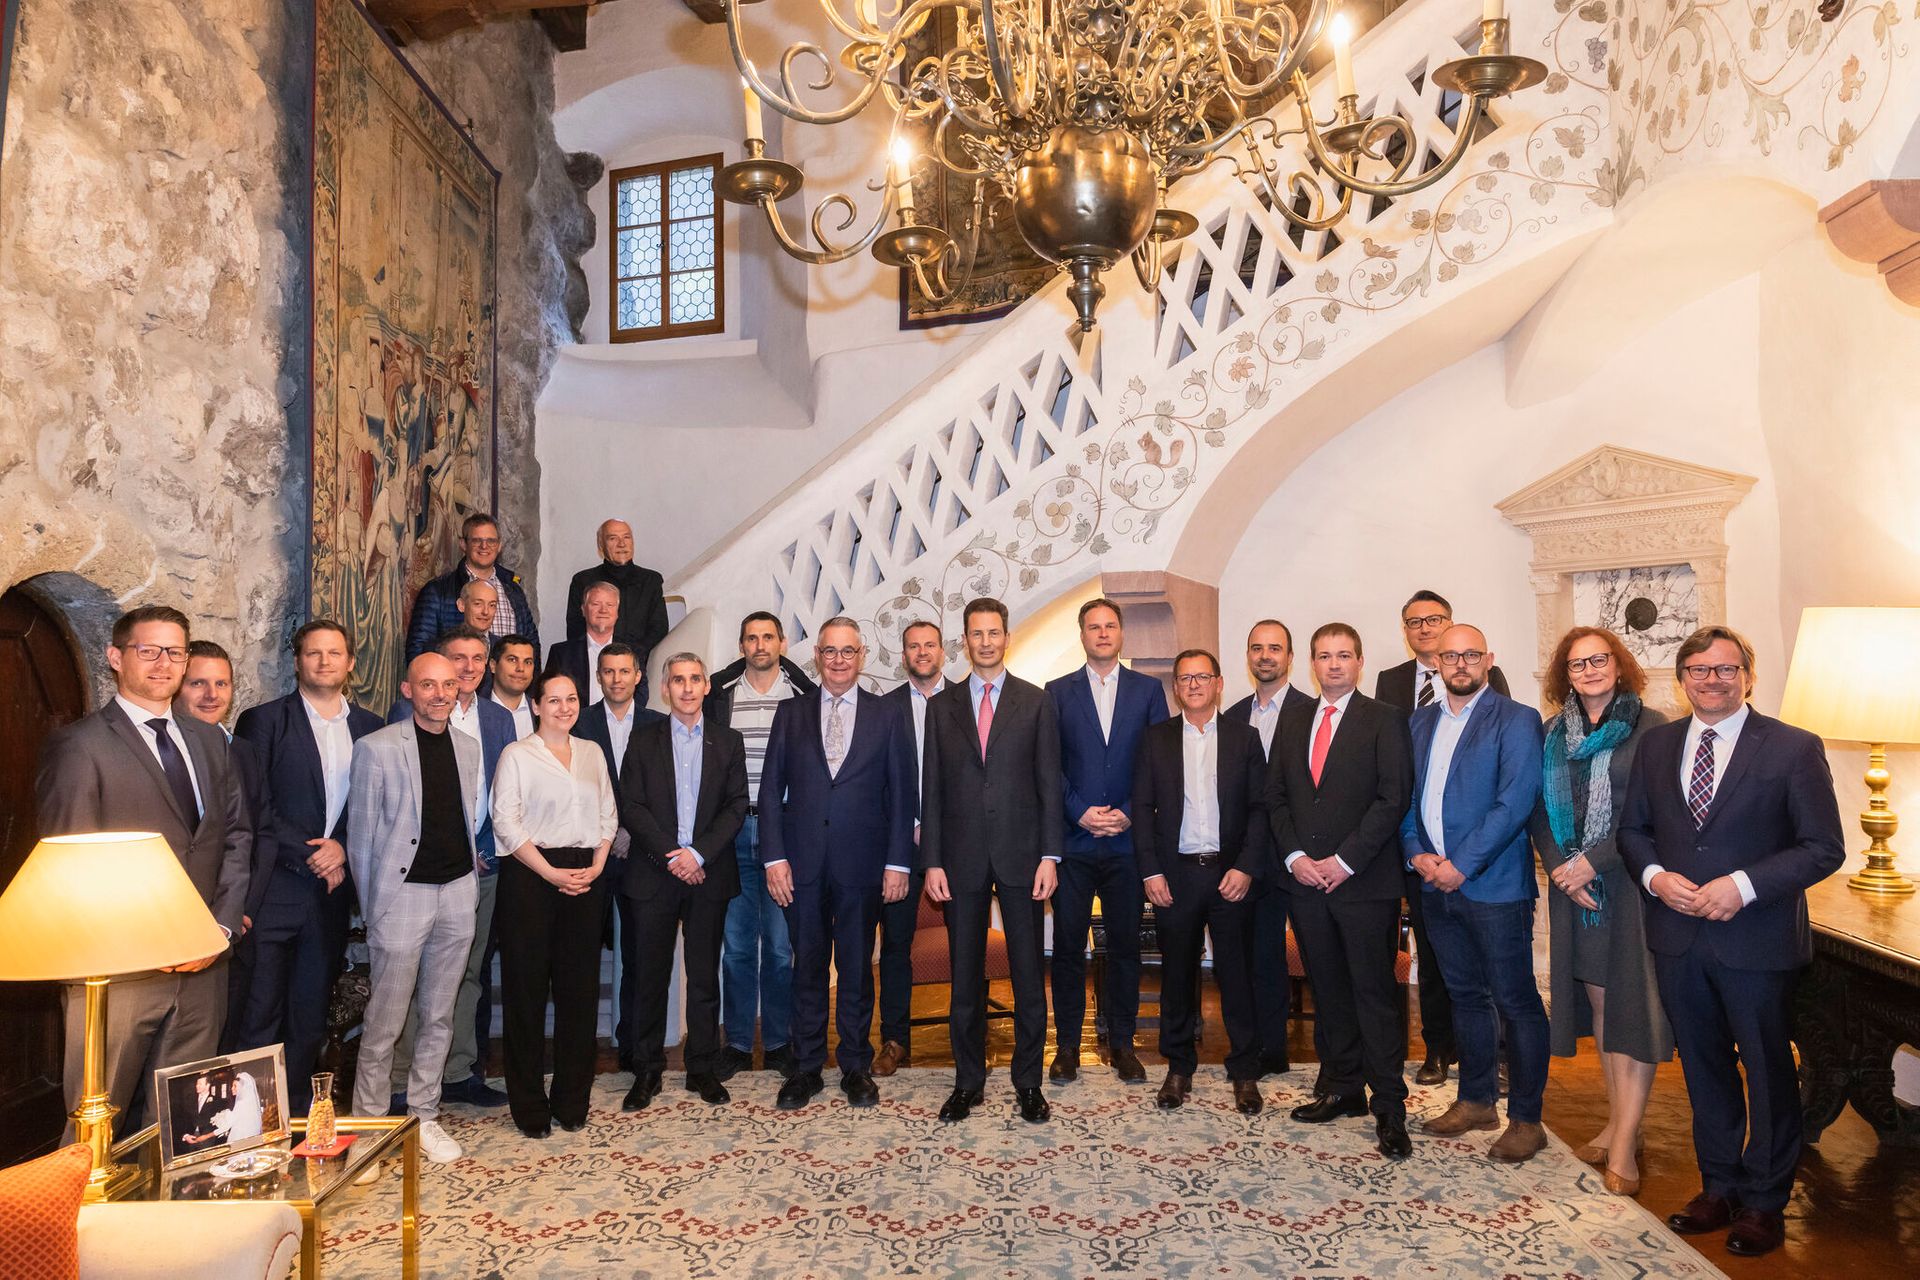 A digital-liechtenstein-li kezdeményezés XNUMX igazgatósági tagja és Alois von und zu Liechtenstein trónörökös találkozója a Vaduz kastélyban